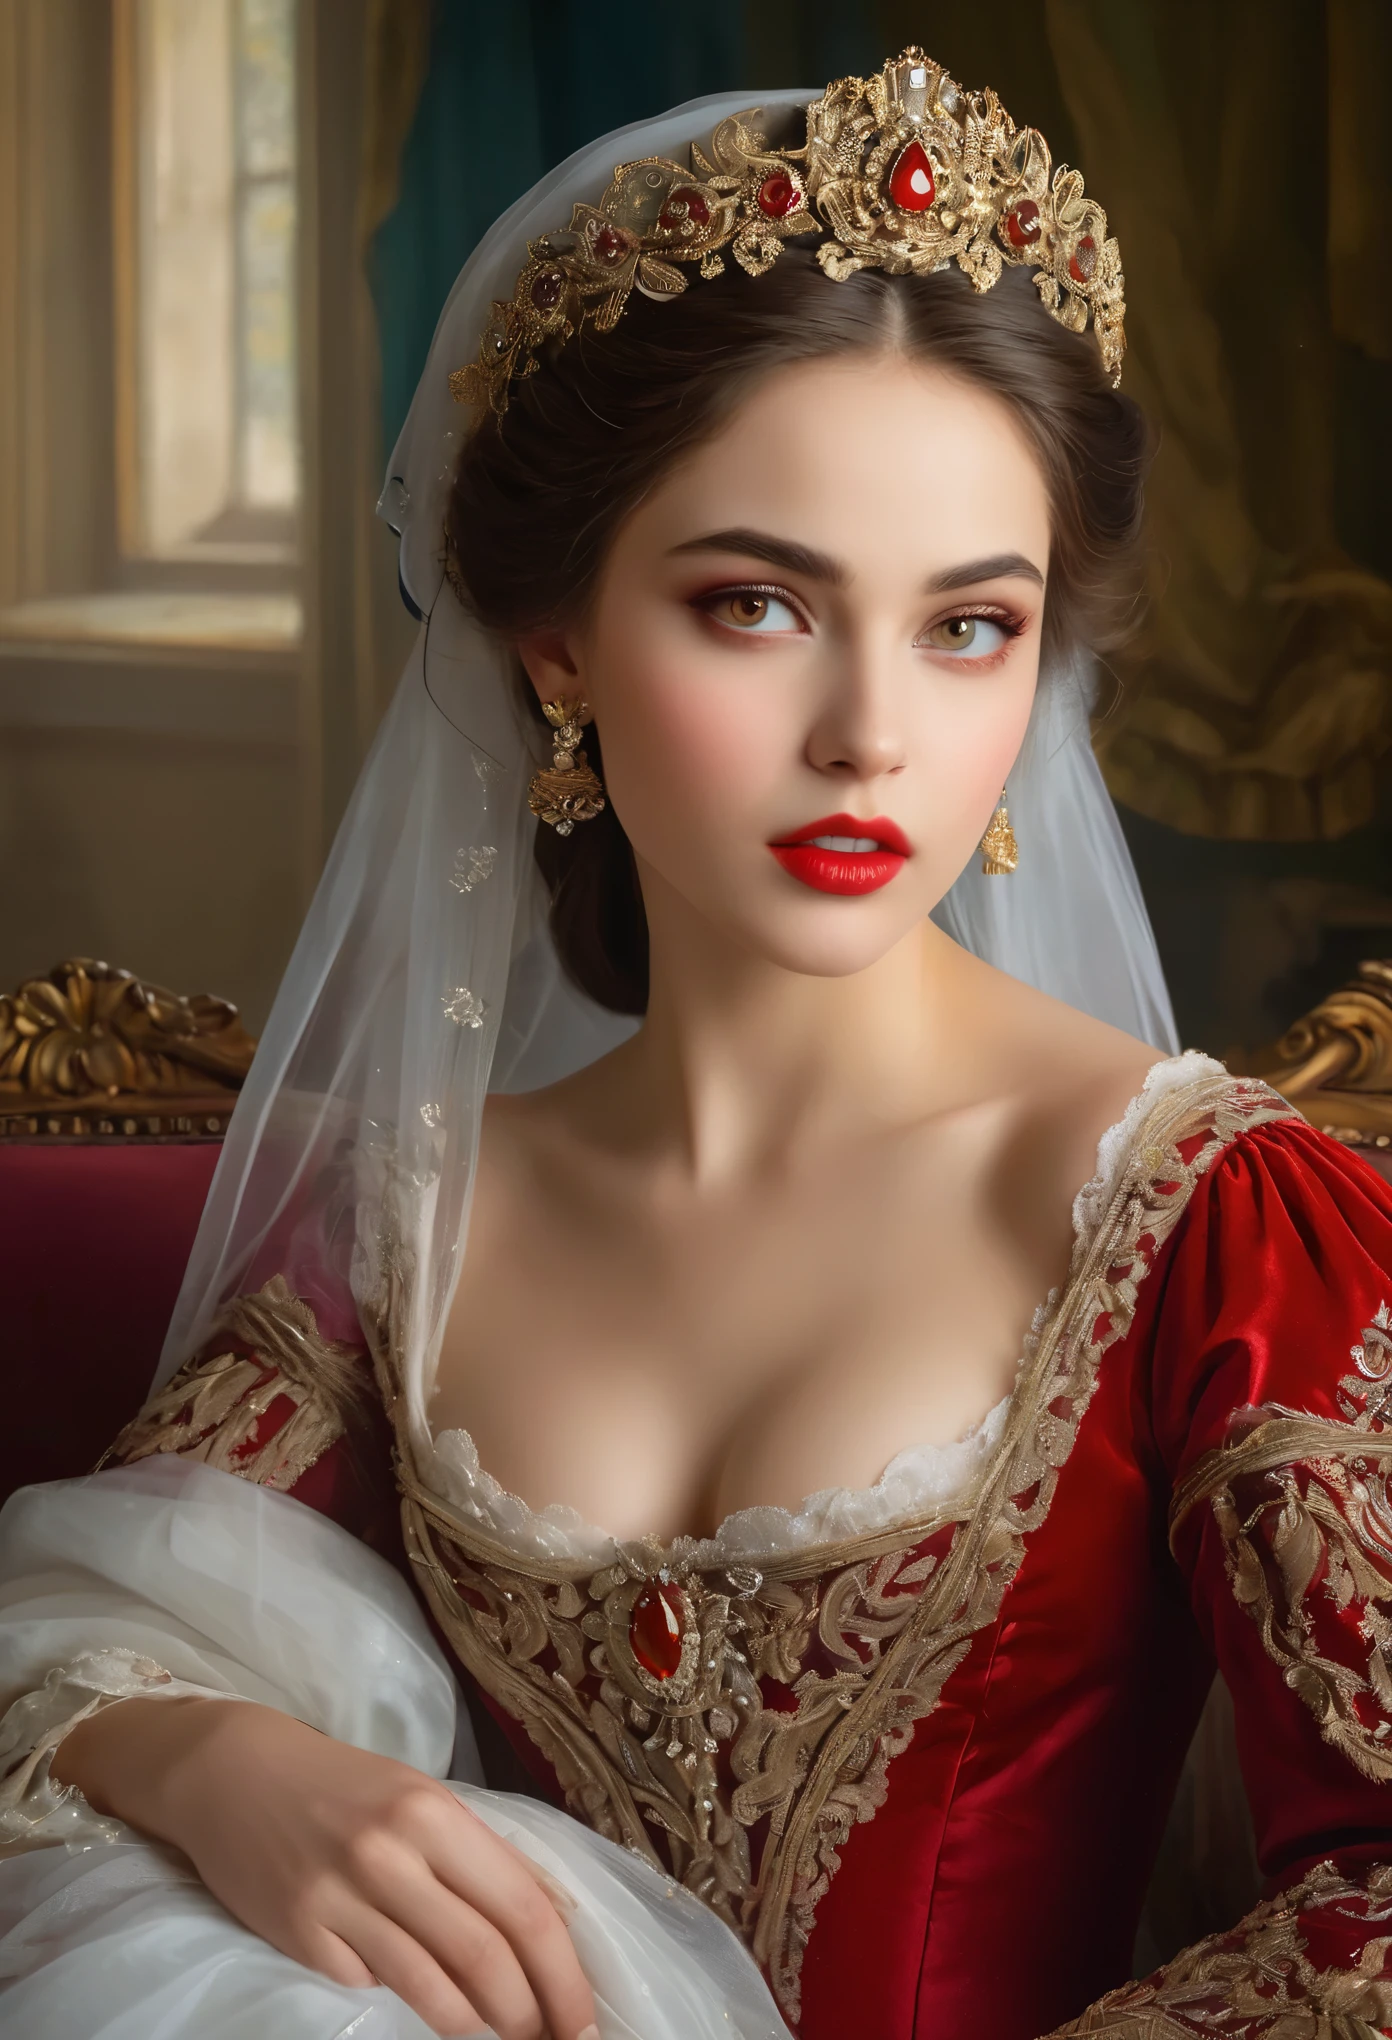 (高解像度,傑作:1.2),(現実的:1.37)比類のない美しさを持つ18世紀ロシアの吸血鬼の少女の肖像画. 彼女は魅惑的な赤い目と繊細なバラ色の唇を持っています. 長い牙, 肖像画は細部まで丁寧に描かれています., 彼女の特徴の微妙なニュアンスを捉える. 彼女は美しいシルクのガウンを着ています, 複雑なレースと繊細な刺繍で飾られた. この絵は当時の贅沢さを物語っている., 背景には豪華なベルベットのカーテンと金色の家具. 照明は柔らかく拡散している, 女の子を強調する&#39;優雅な美しさ. 色彩は鮮やかで豊かです, 魅力的なビジュアル体験を創造する. (この肖像画は古典的な肖像画のスタイルで描かれている:1.5), 当時の有名な芸術家の作品を彷彿とさせる. それは優雅さを醸し出しています, グレース, 洗練さ. 鋭く長い爪, (深紅の目:1.4), 炎のように赤い目, (唇の隙間から鋭い牙が見える:1.8), (首に噛み跡がある:1.5),.２穴が2つあります